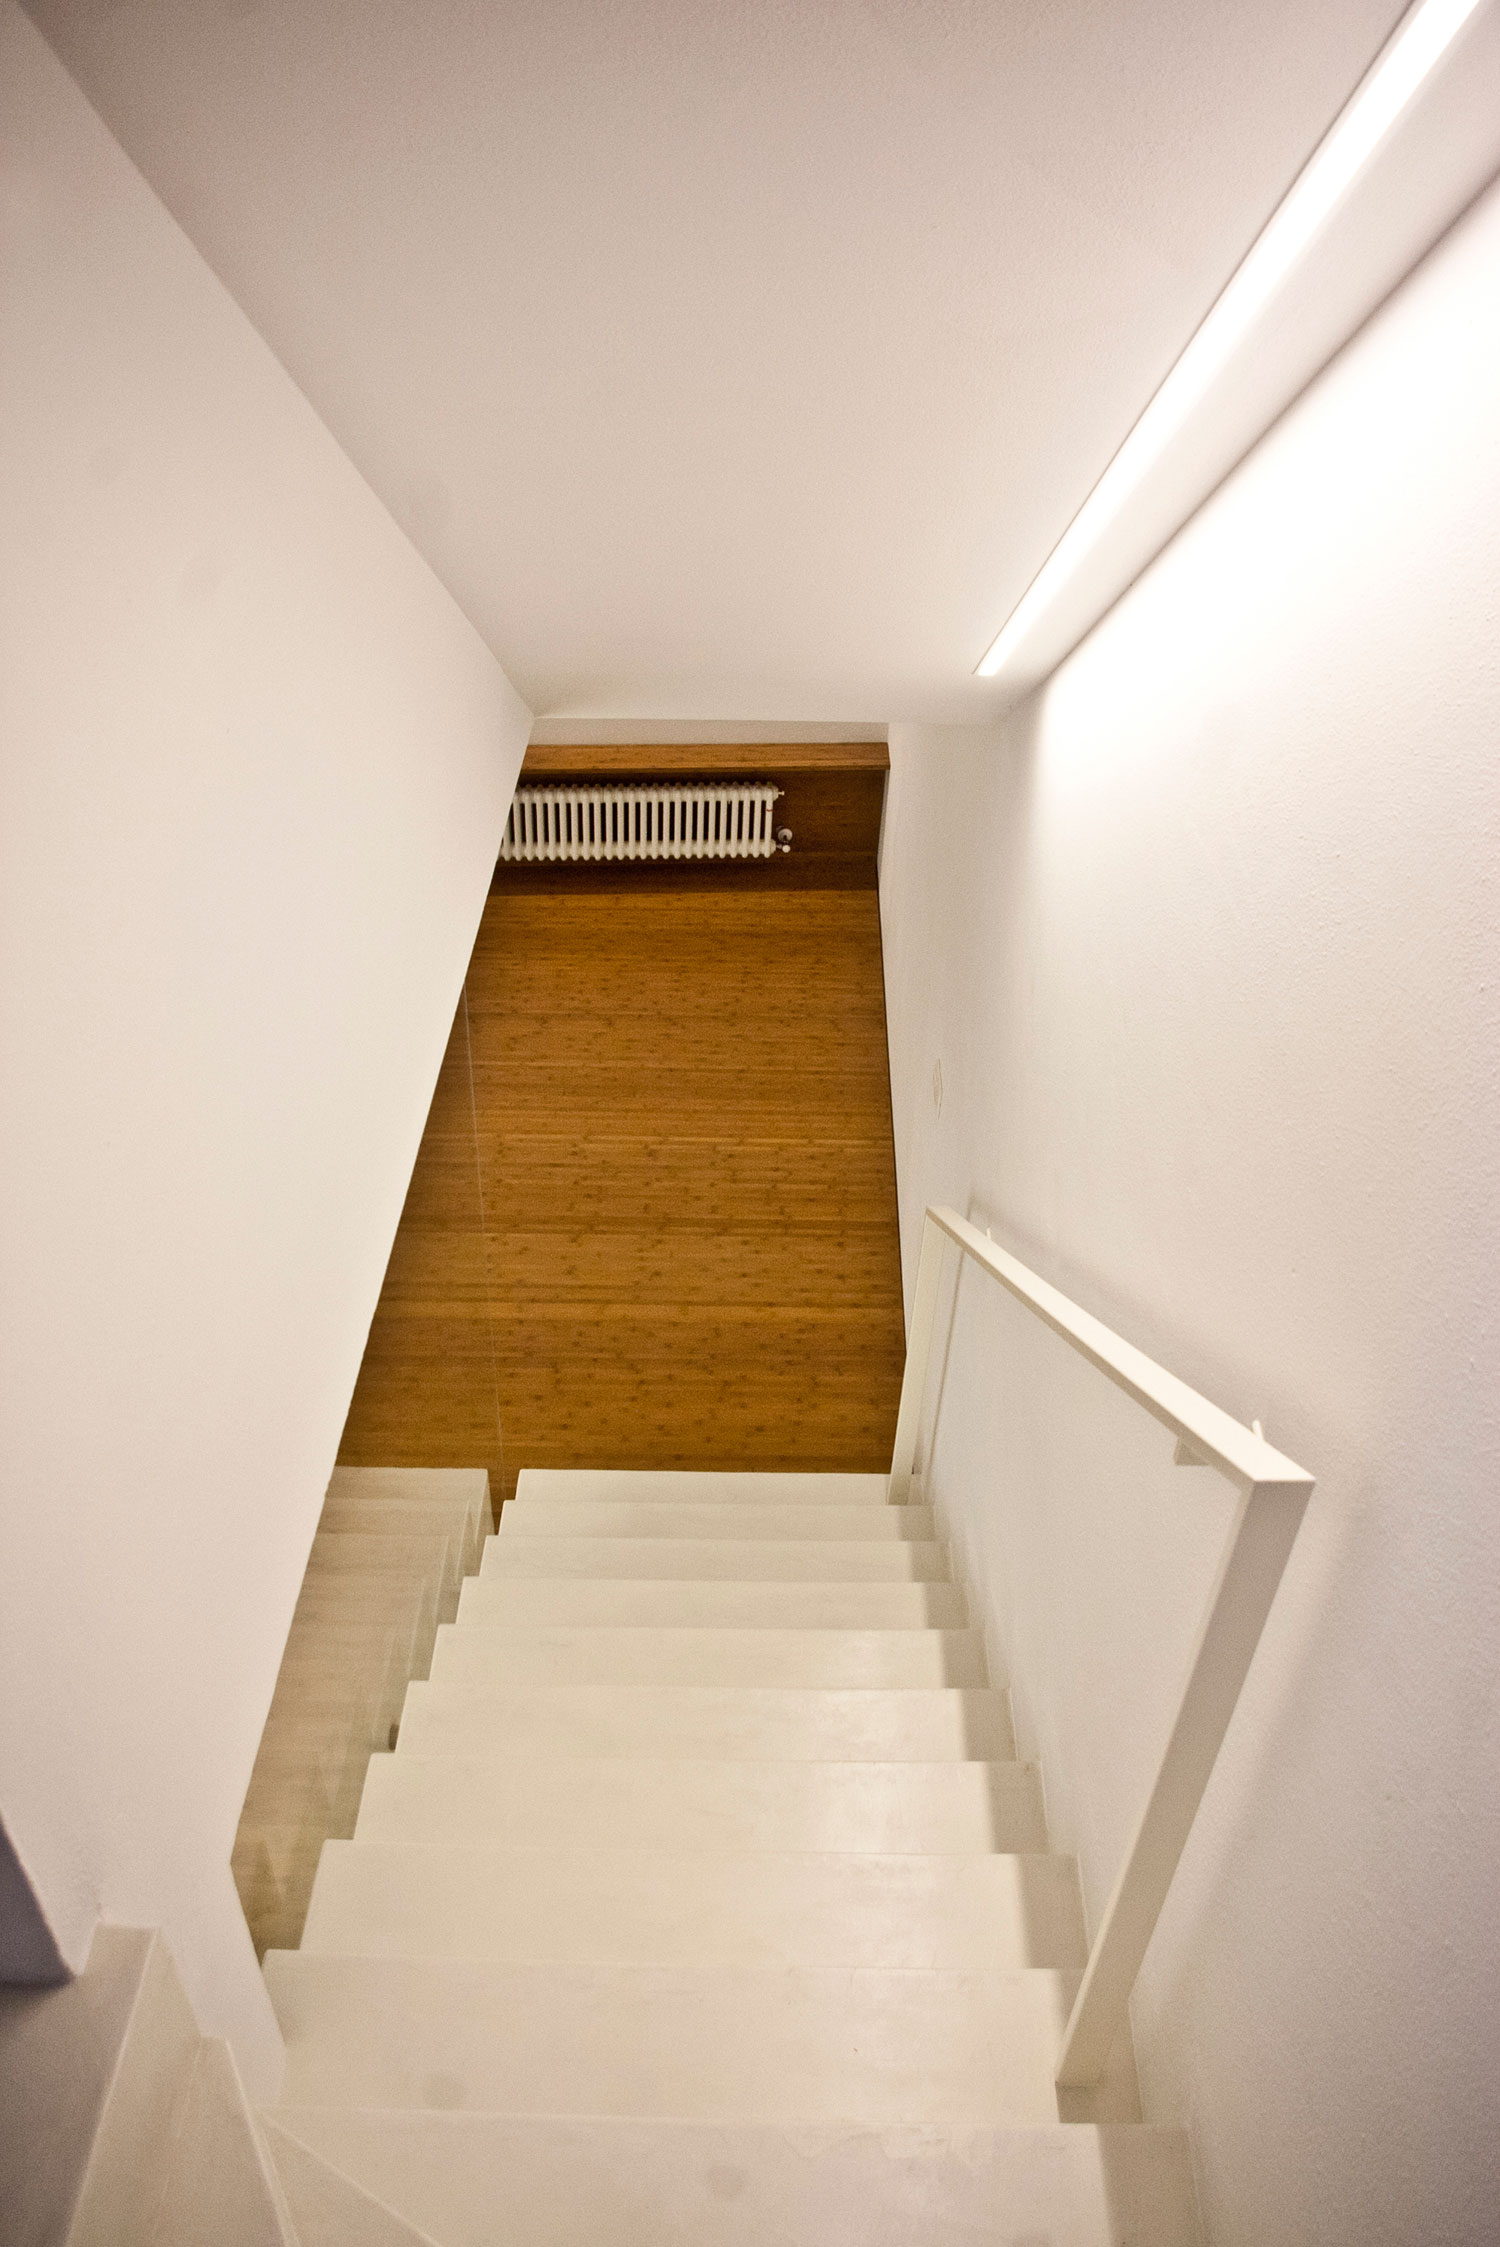 Как изменить интерьер дома? интересная реконструкция цокольного этажа от архитекторов msx2, монтелупо, флоренция, италия